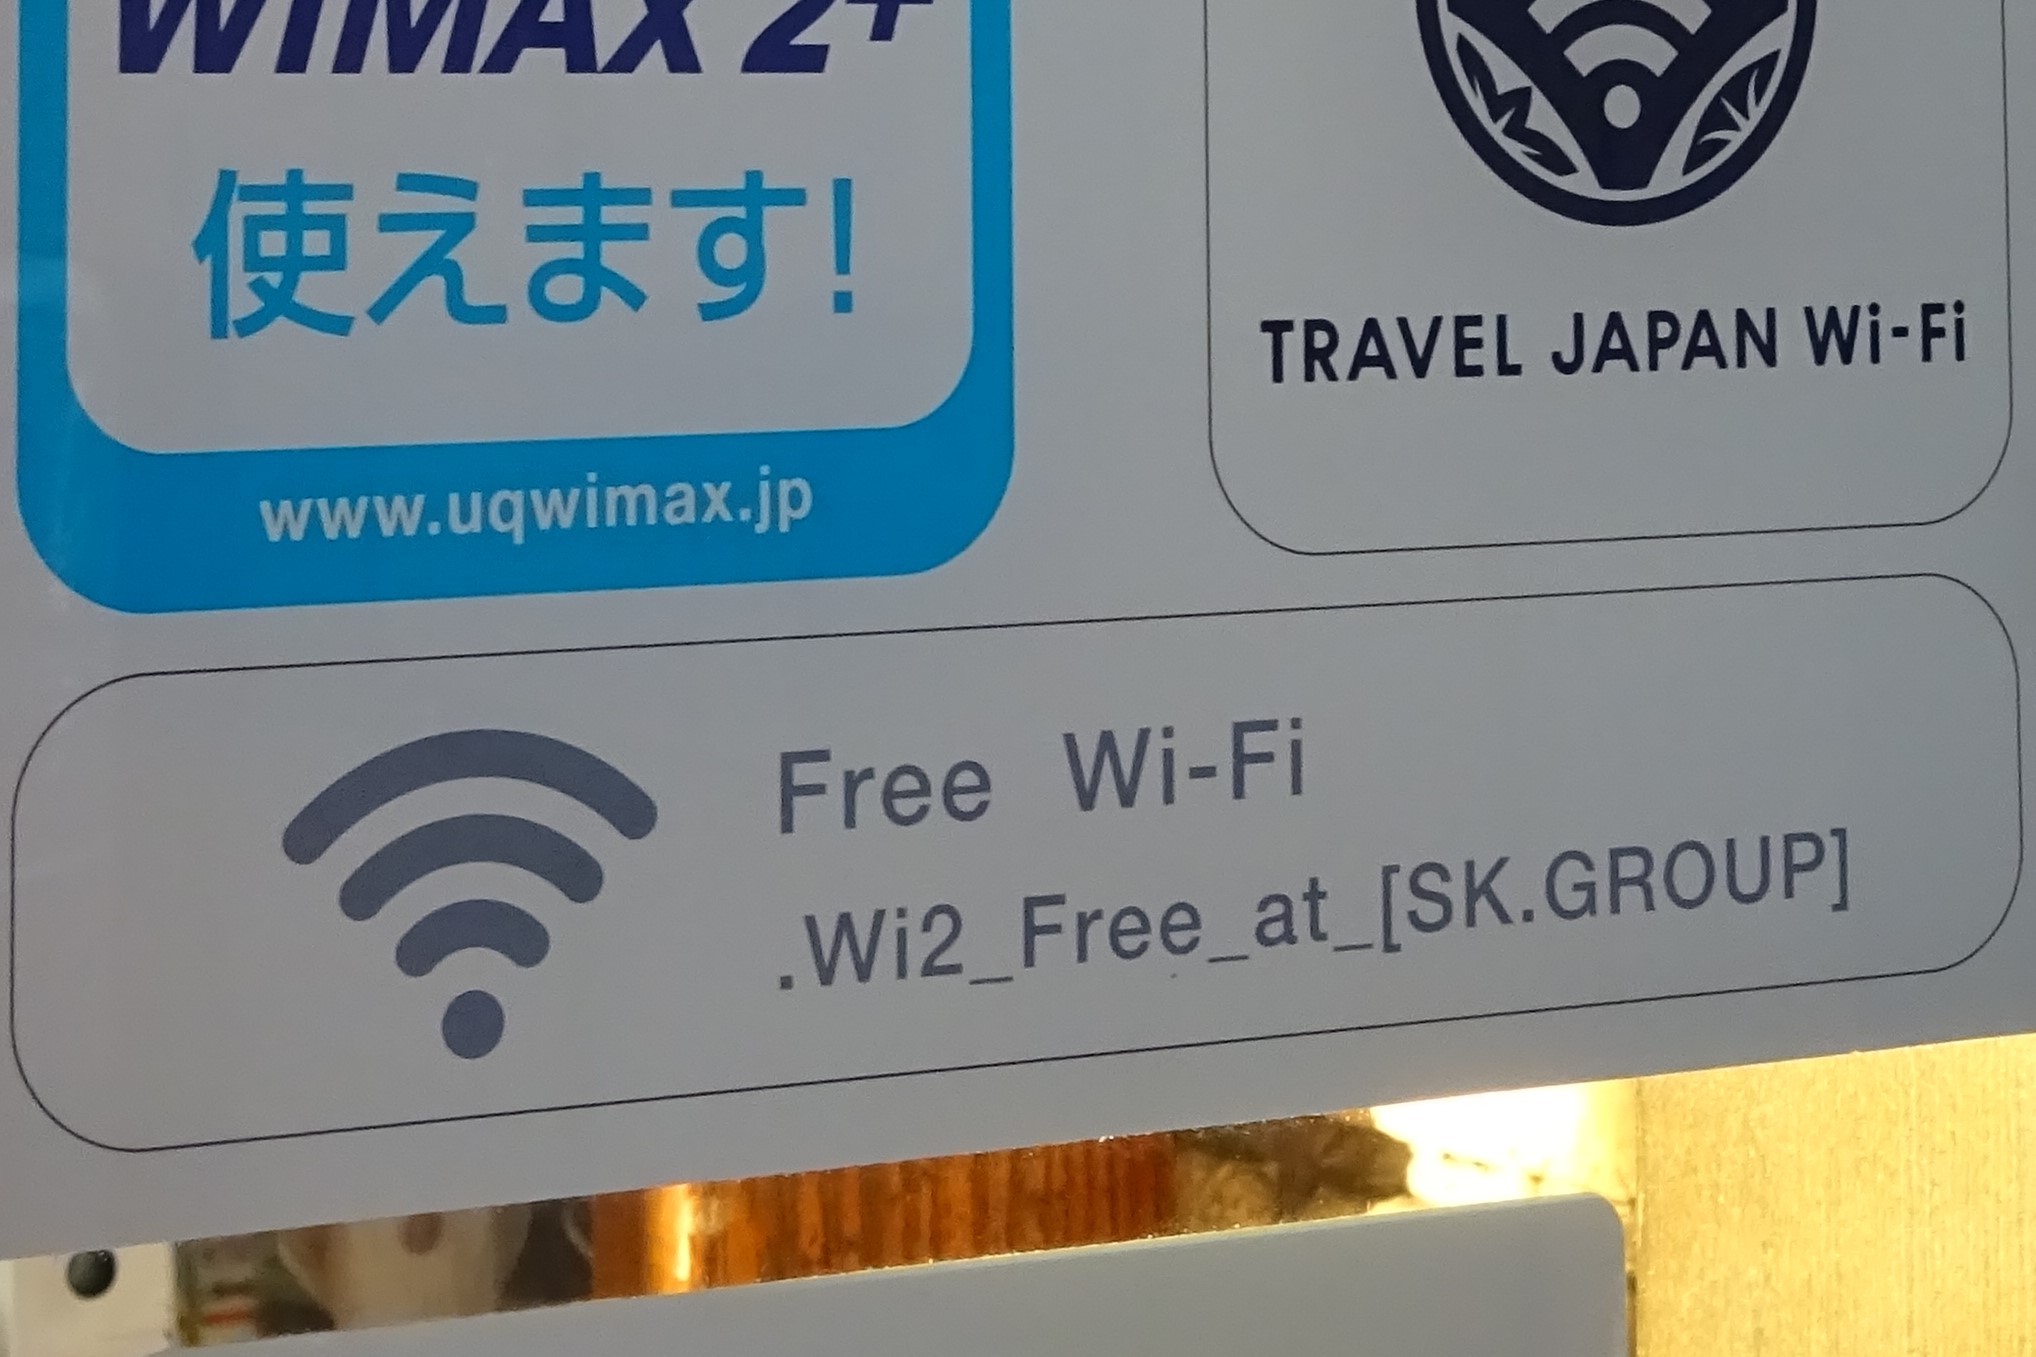 すかいらーくグループで利用できる無料wi Fi すかいらーくwi Fi の設定方法と接続手順 得北